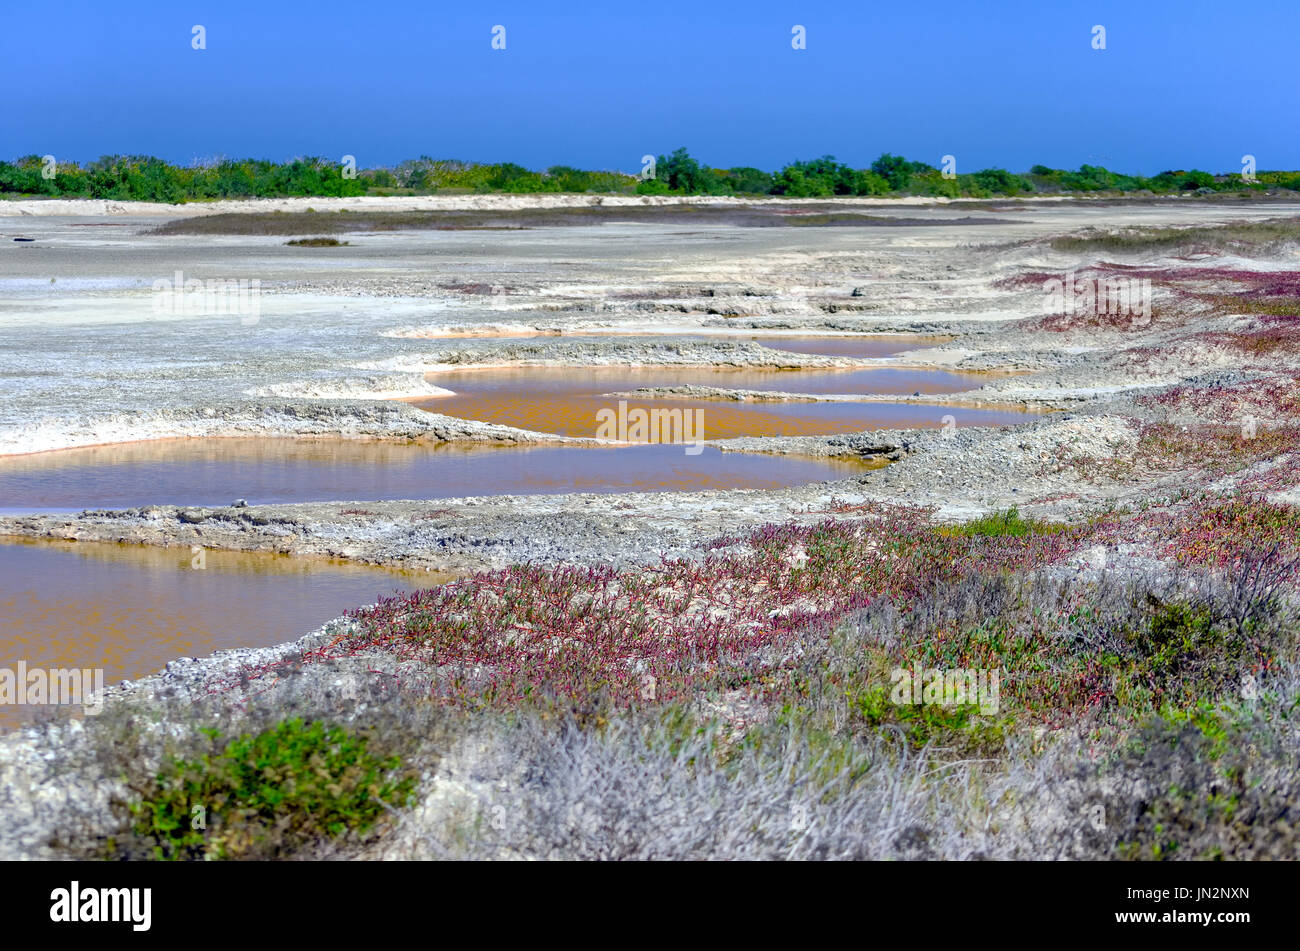 Vue de la zone avec des petits bassins de sel à Rio Lagartos dans la péninsule du Yucatan au Mexique Banque D'Images